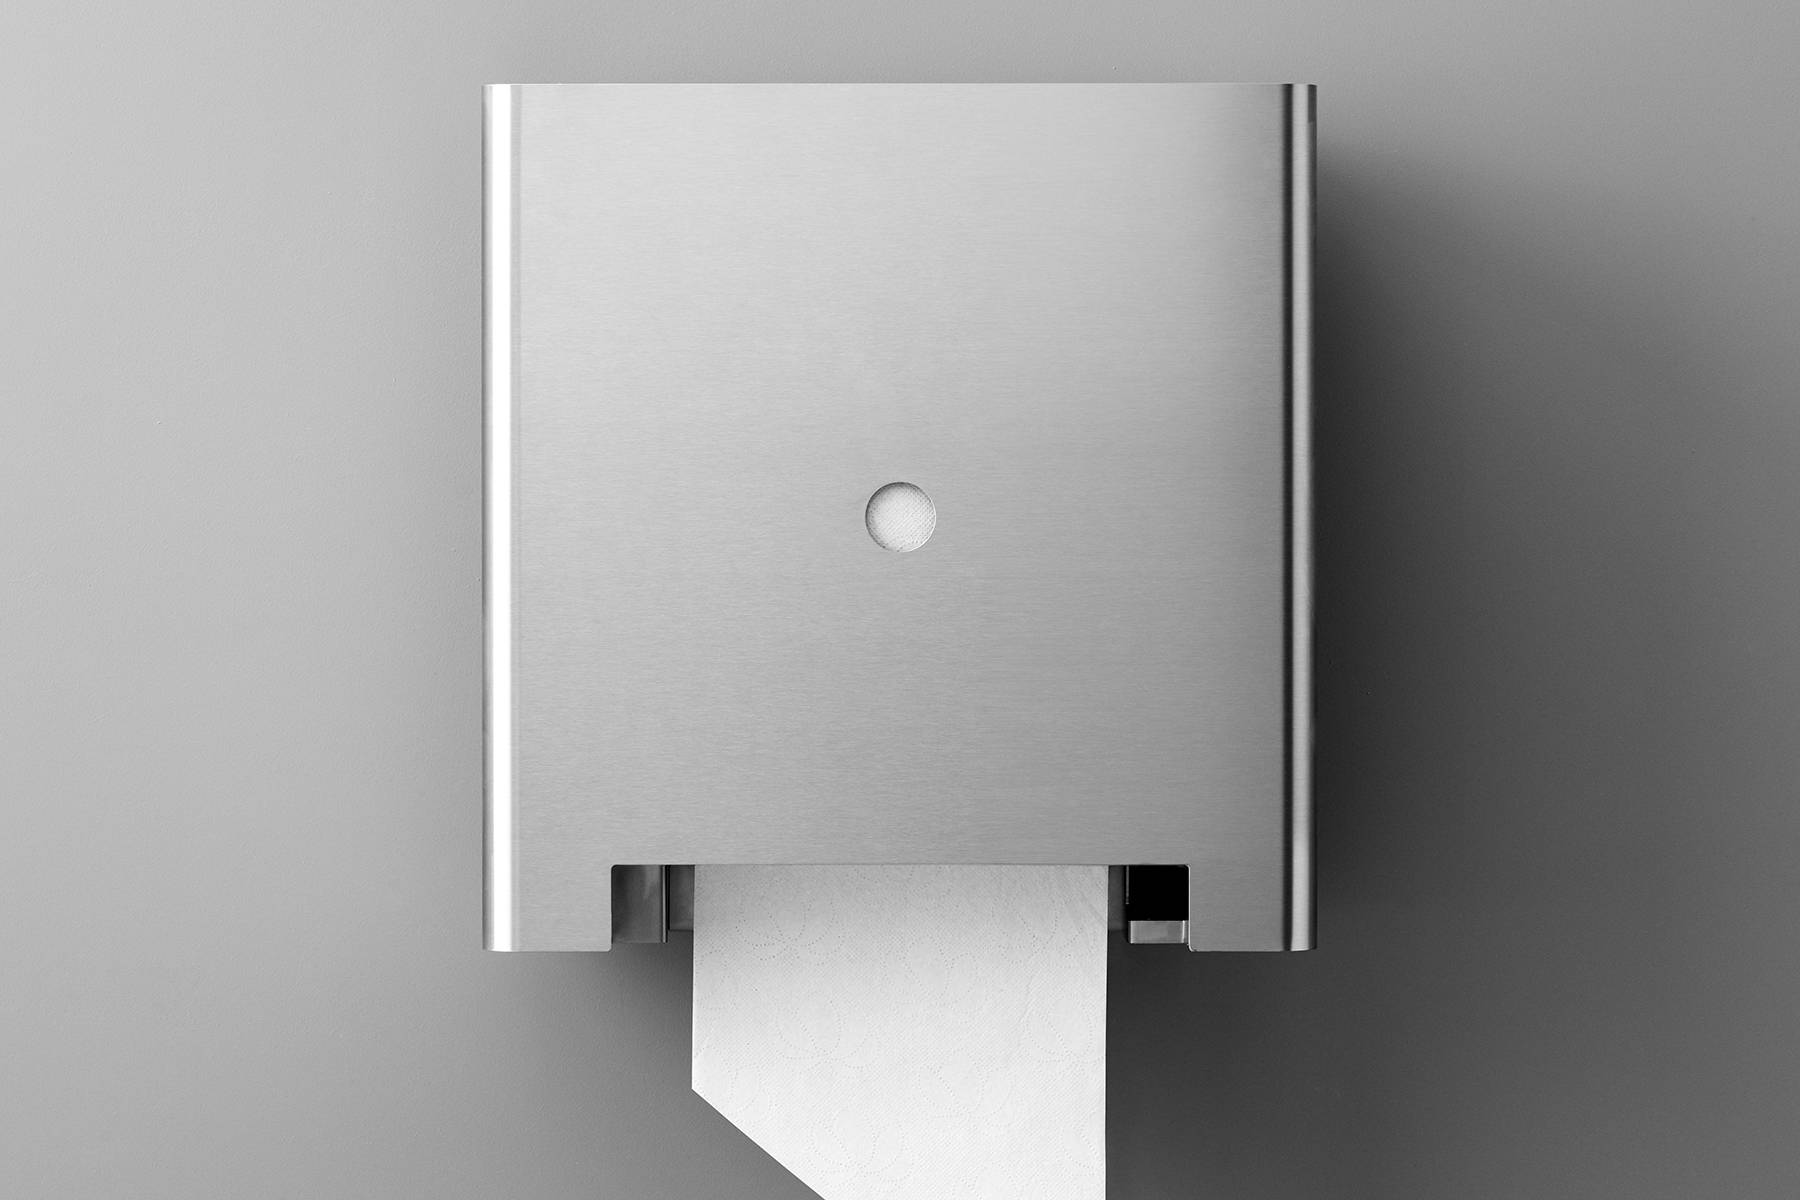 Touchless paper roll dispenser, 140 mm diameter roll - Touchless paper roll dispenser